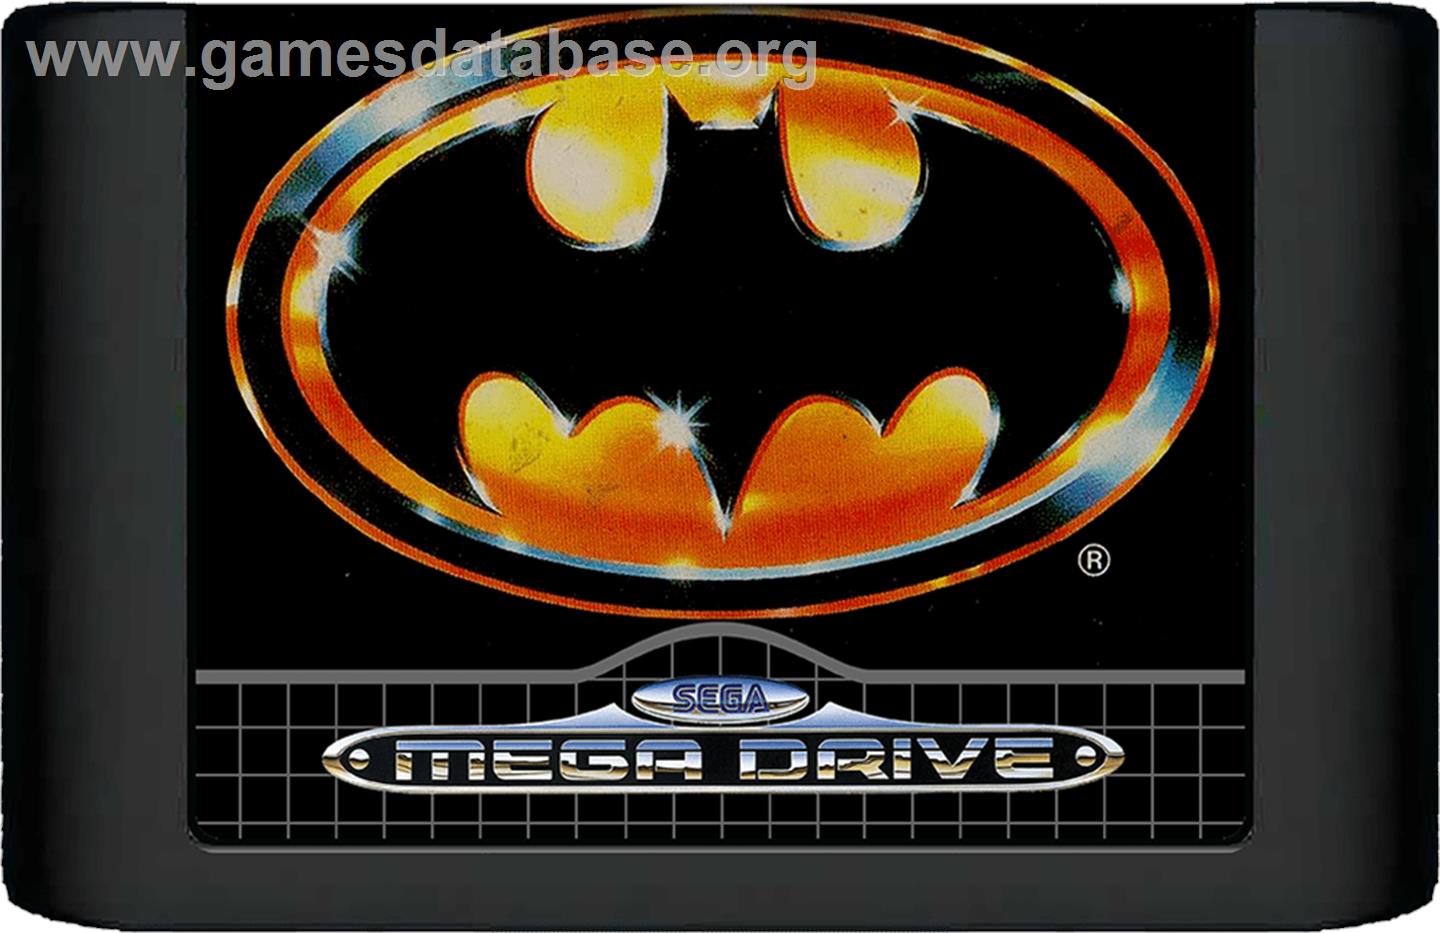 Batman: Return of the Joker - Sega Genesis - Artwork - Cartridge